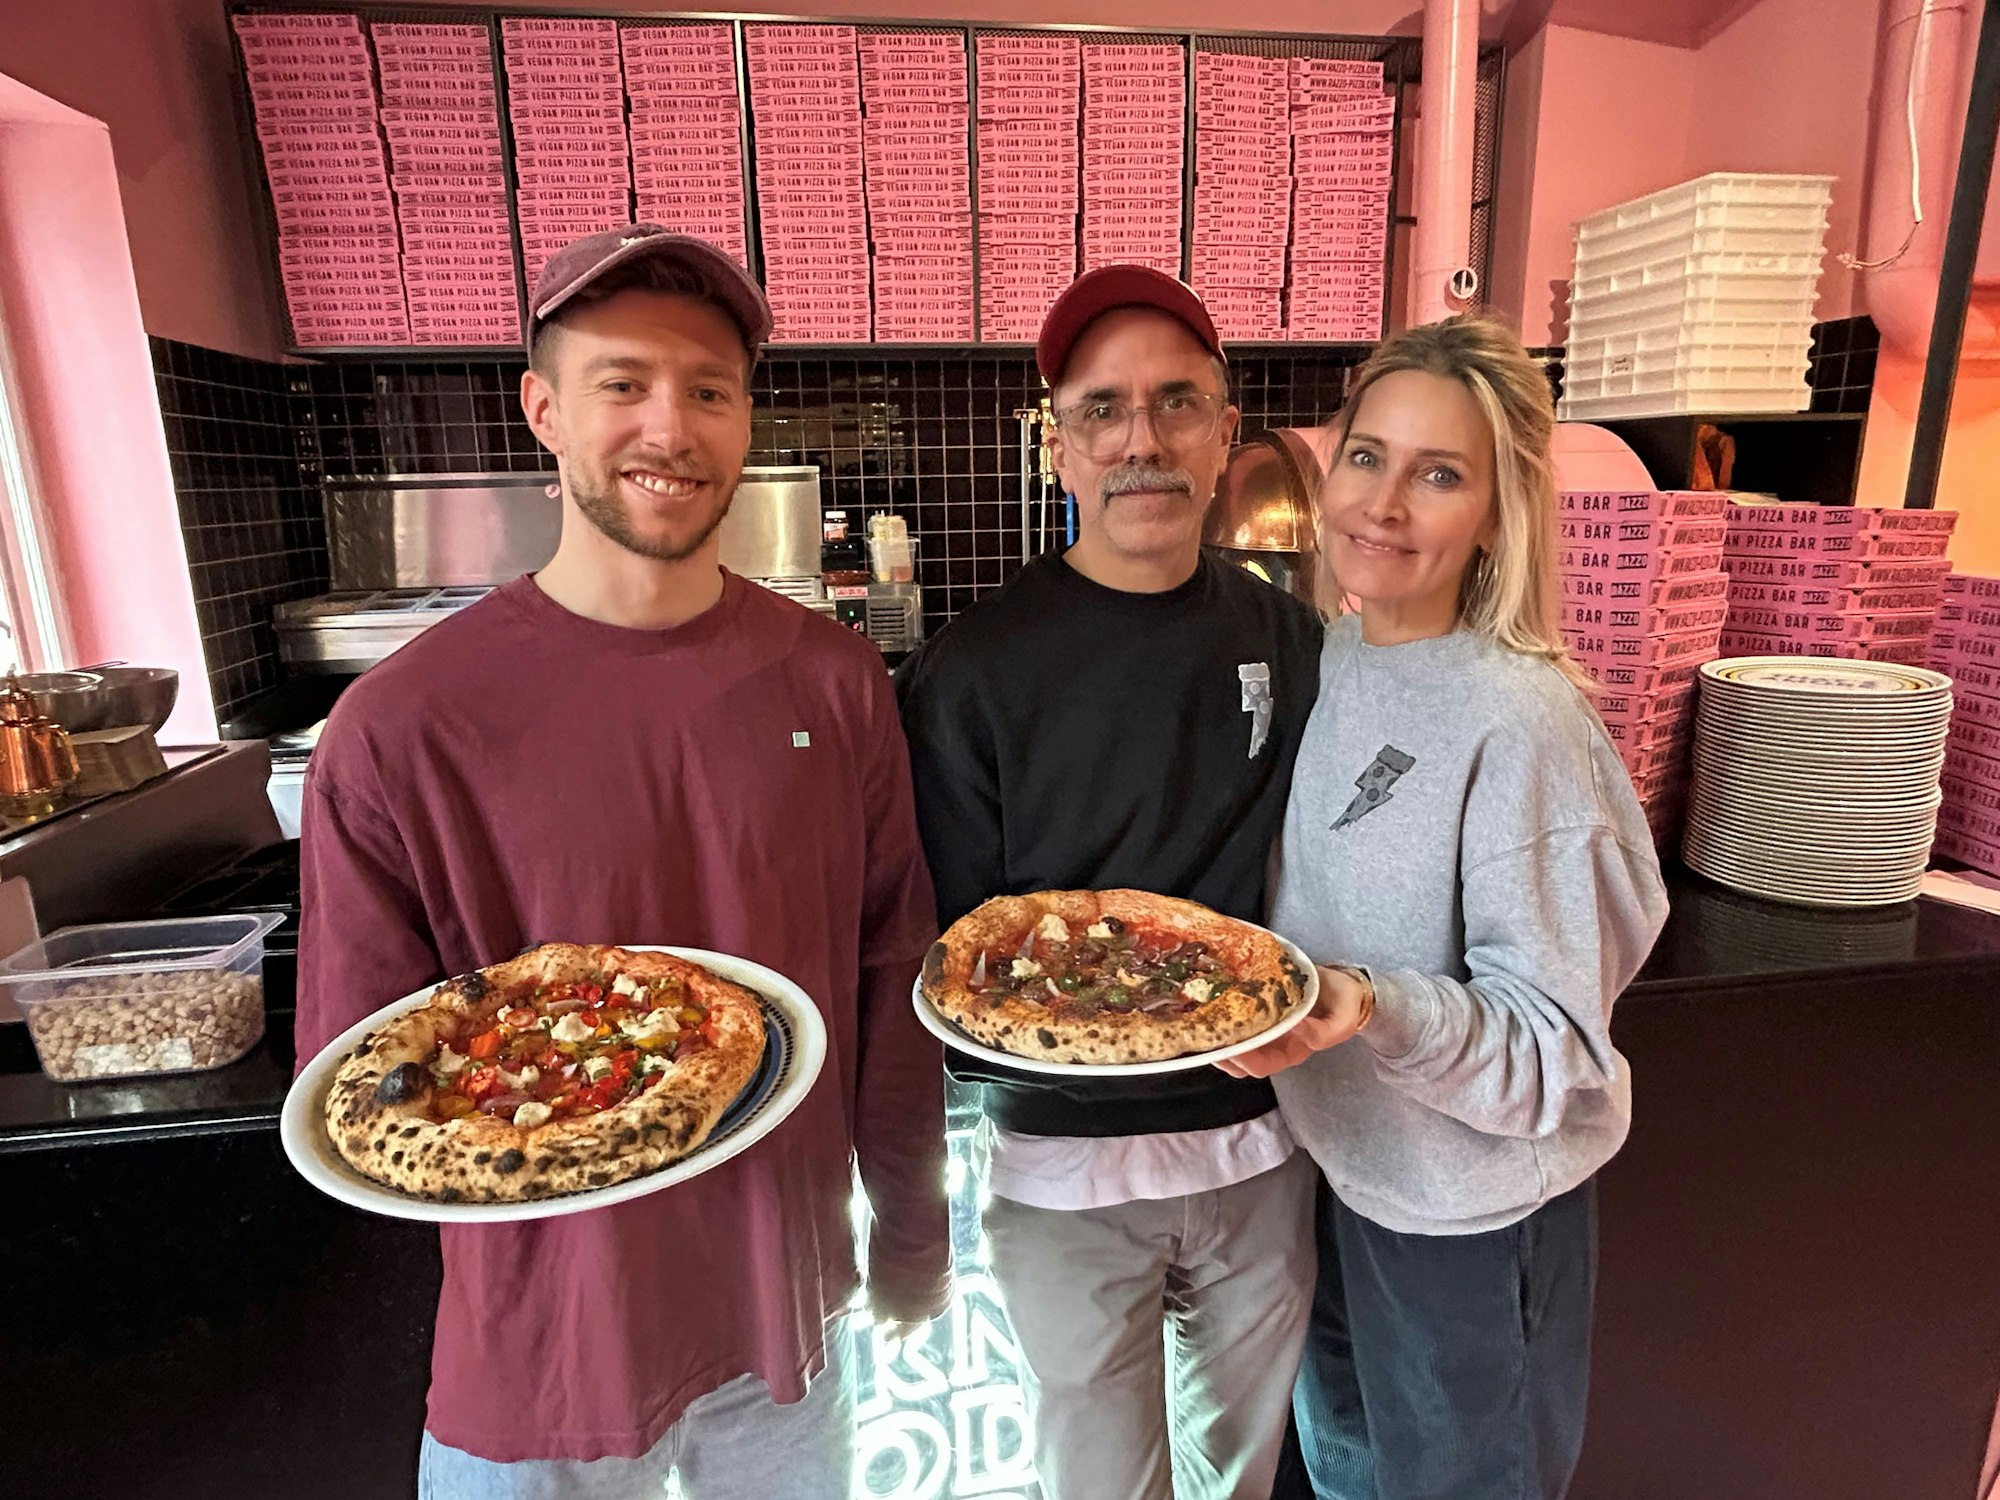 Mitchell Weiser mit Ingo Noack und Verena Malta in der Pizzeria.